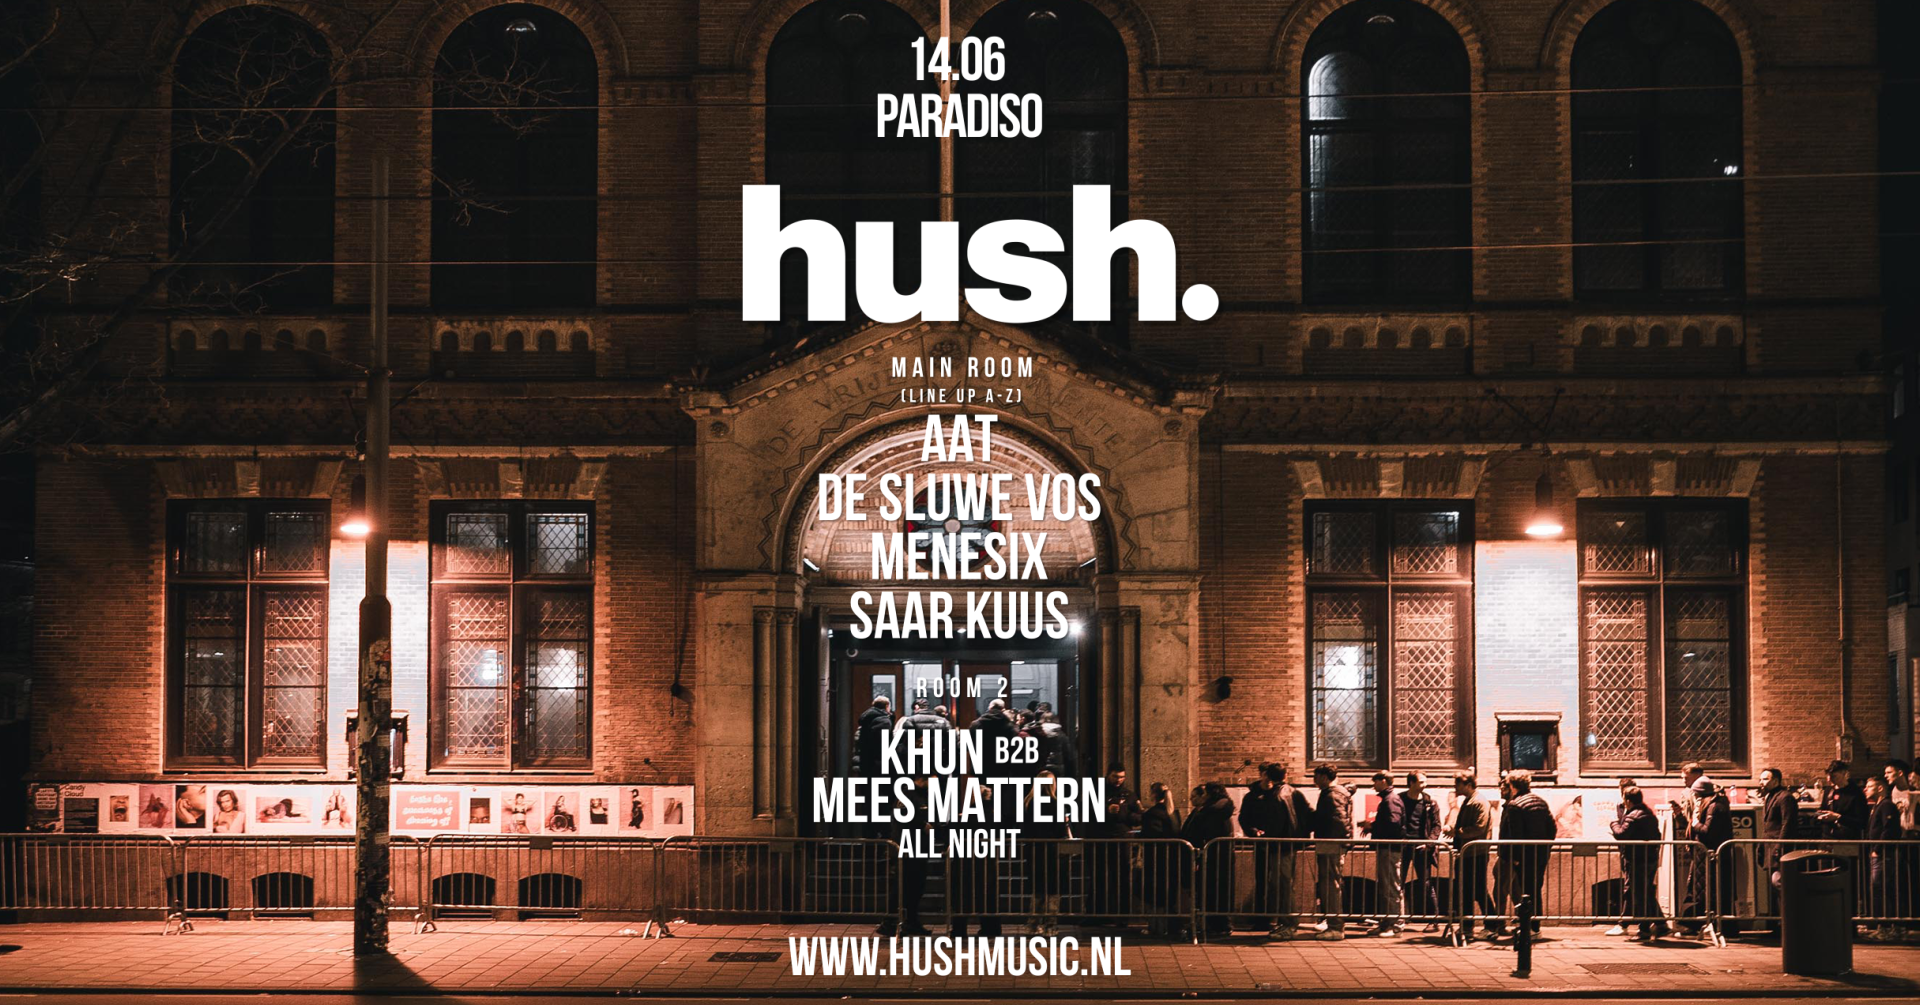 Hush. with De Sluwe Vos, Menesix - Página frontal